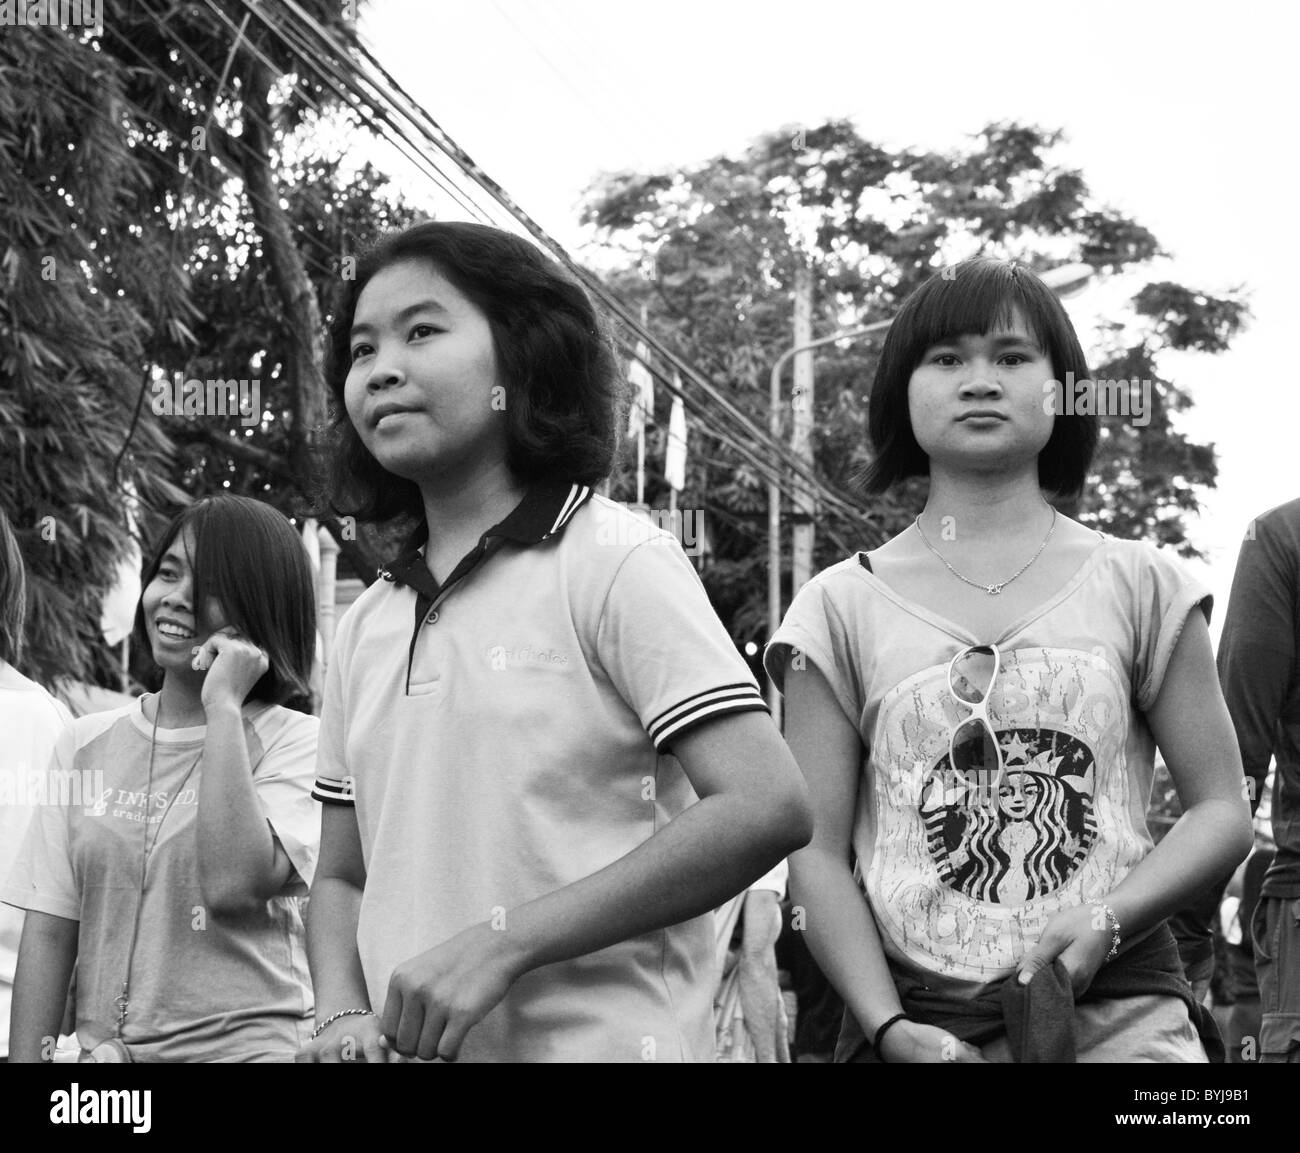 Schwarz / weiß Foto von jungen Mädchen auf einer Straße in Thailand Stockfoto